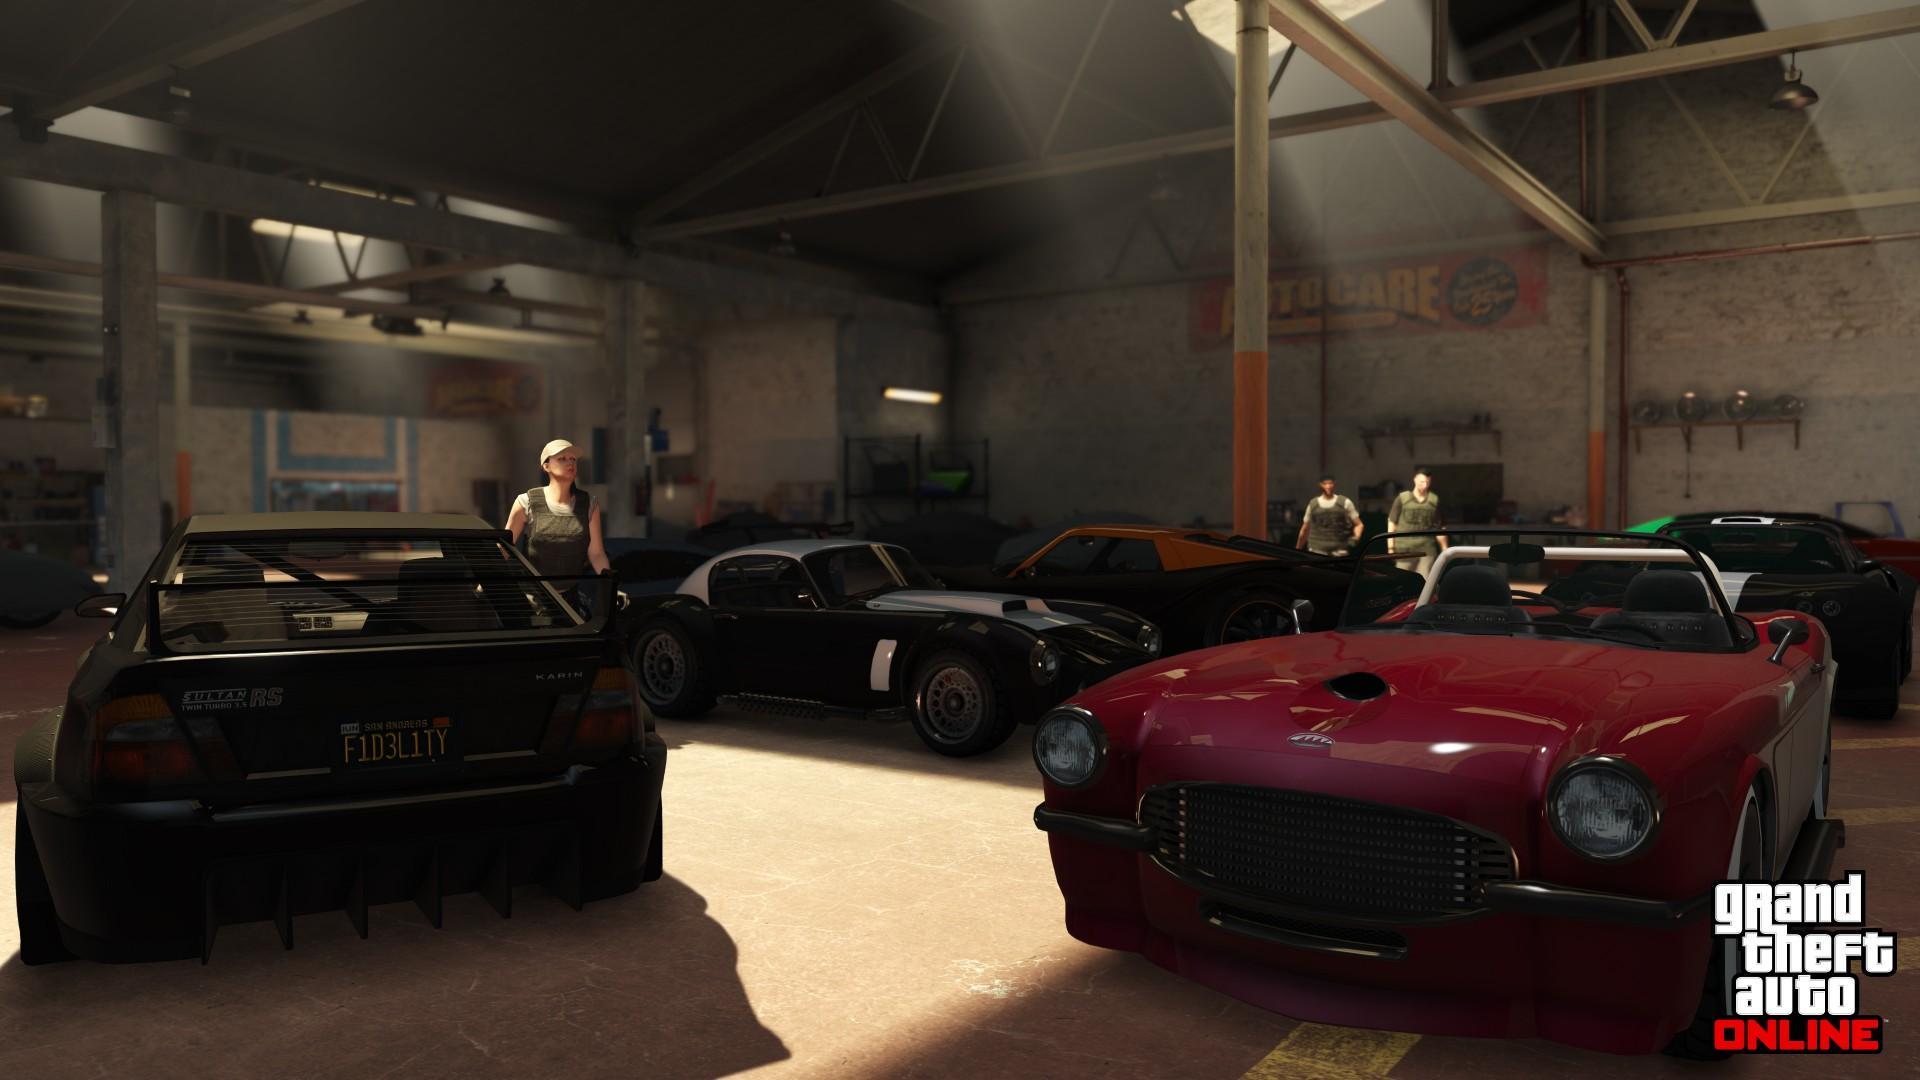 Склад транспортных средств — первый способ заработка в GTA Online.